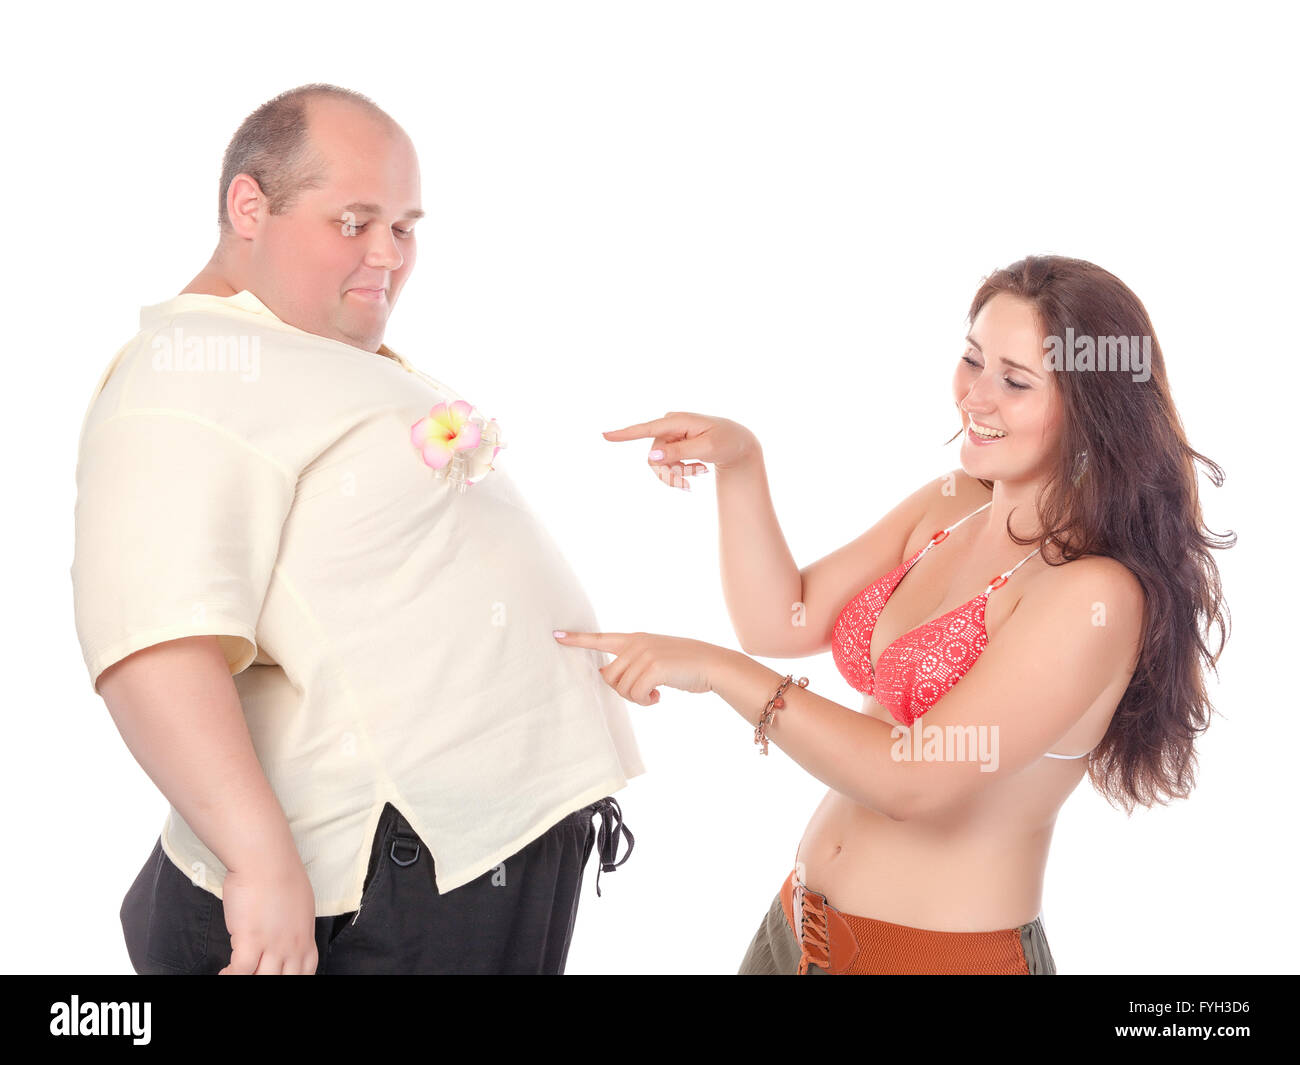 skinny guy fat girl dating